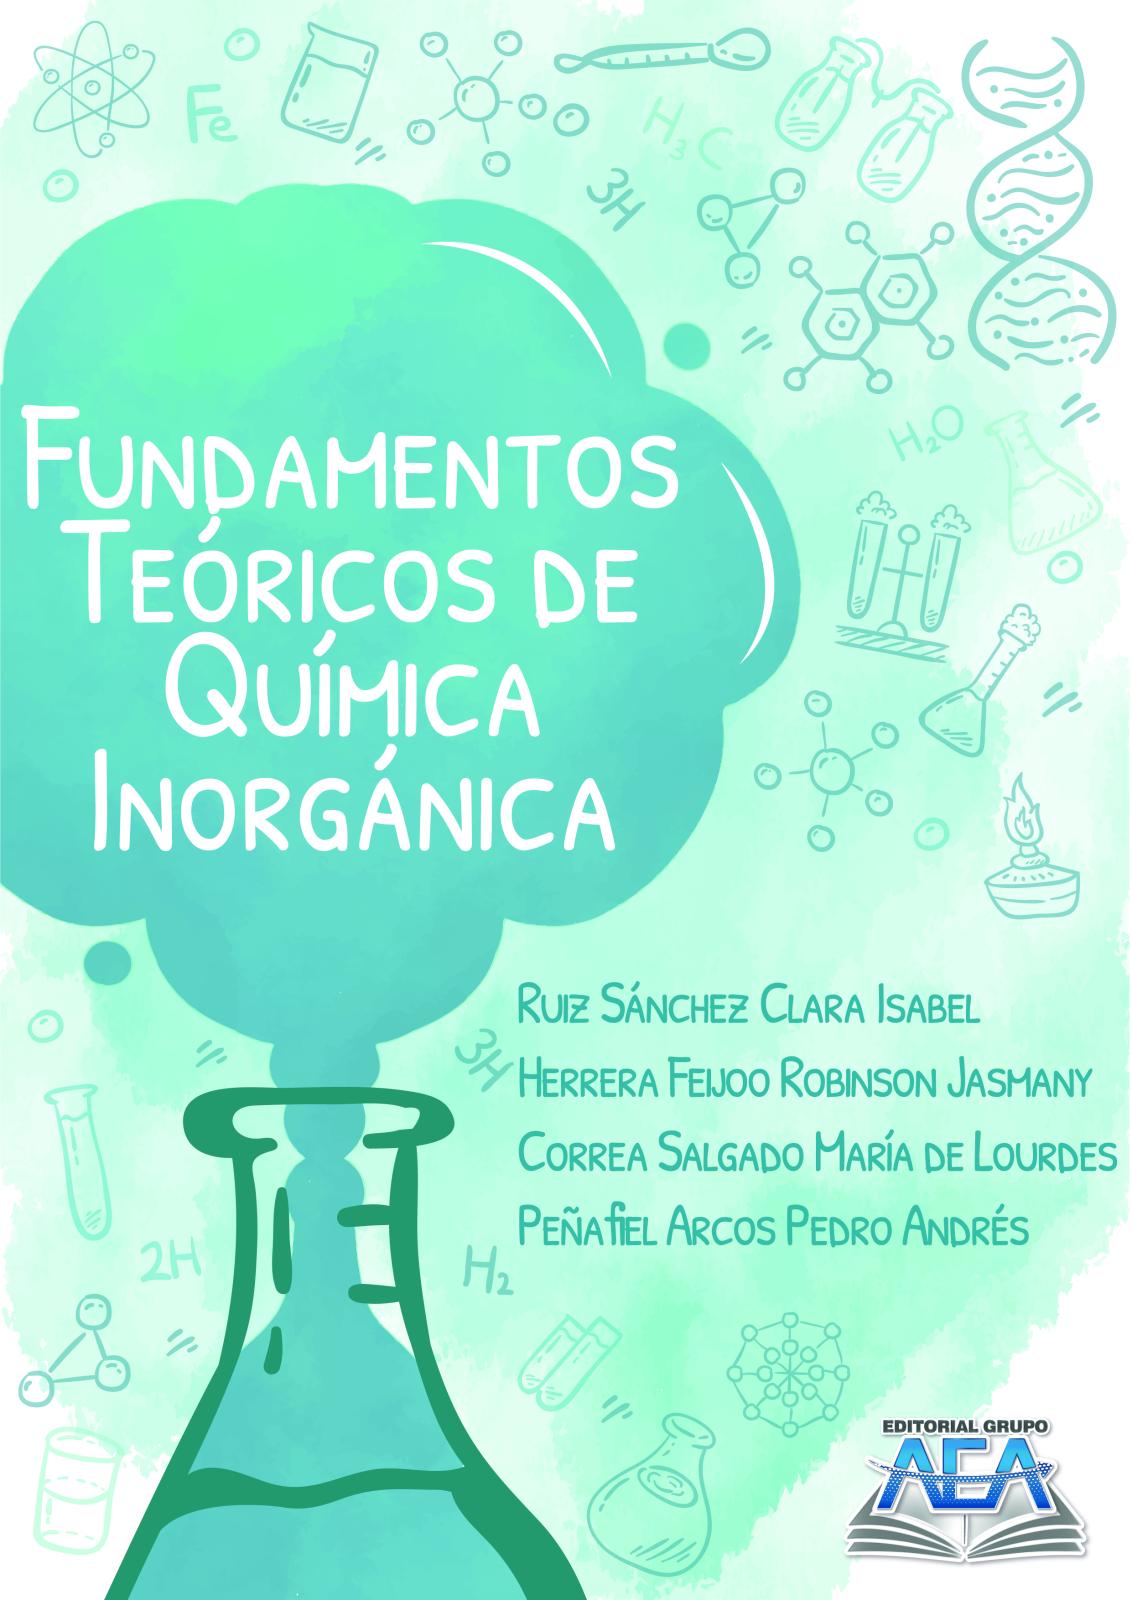 Read more about Fundamentos Teóricos de Química Inorgánica